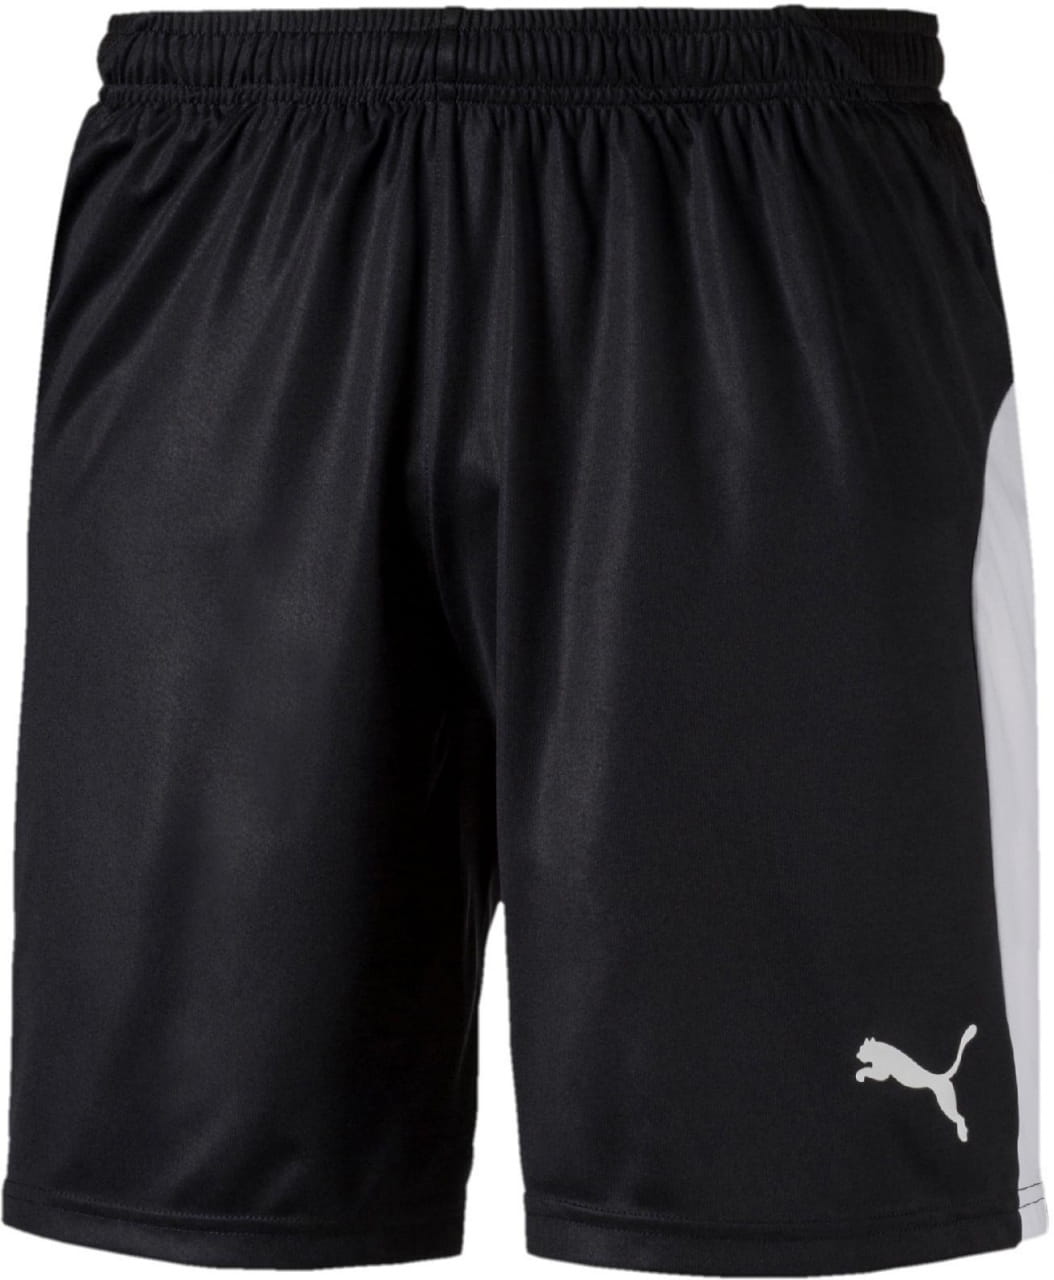 Pánske športové kraťasy Puma LIGA Shorts